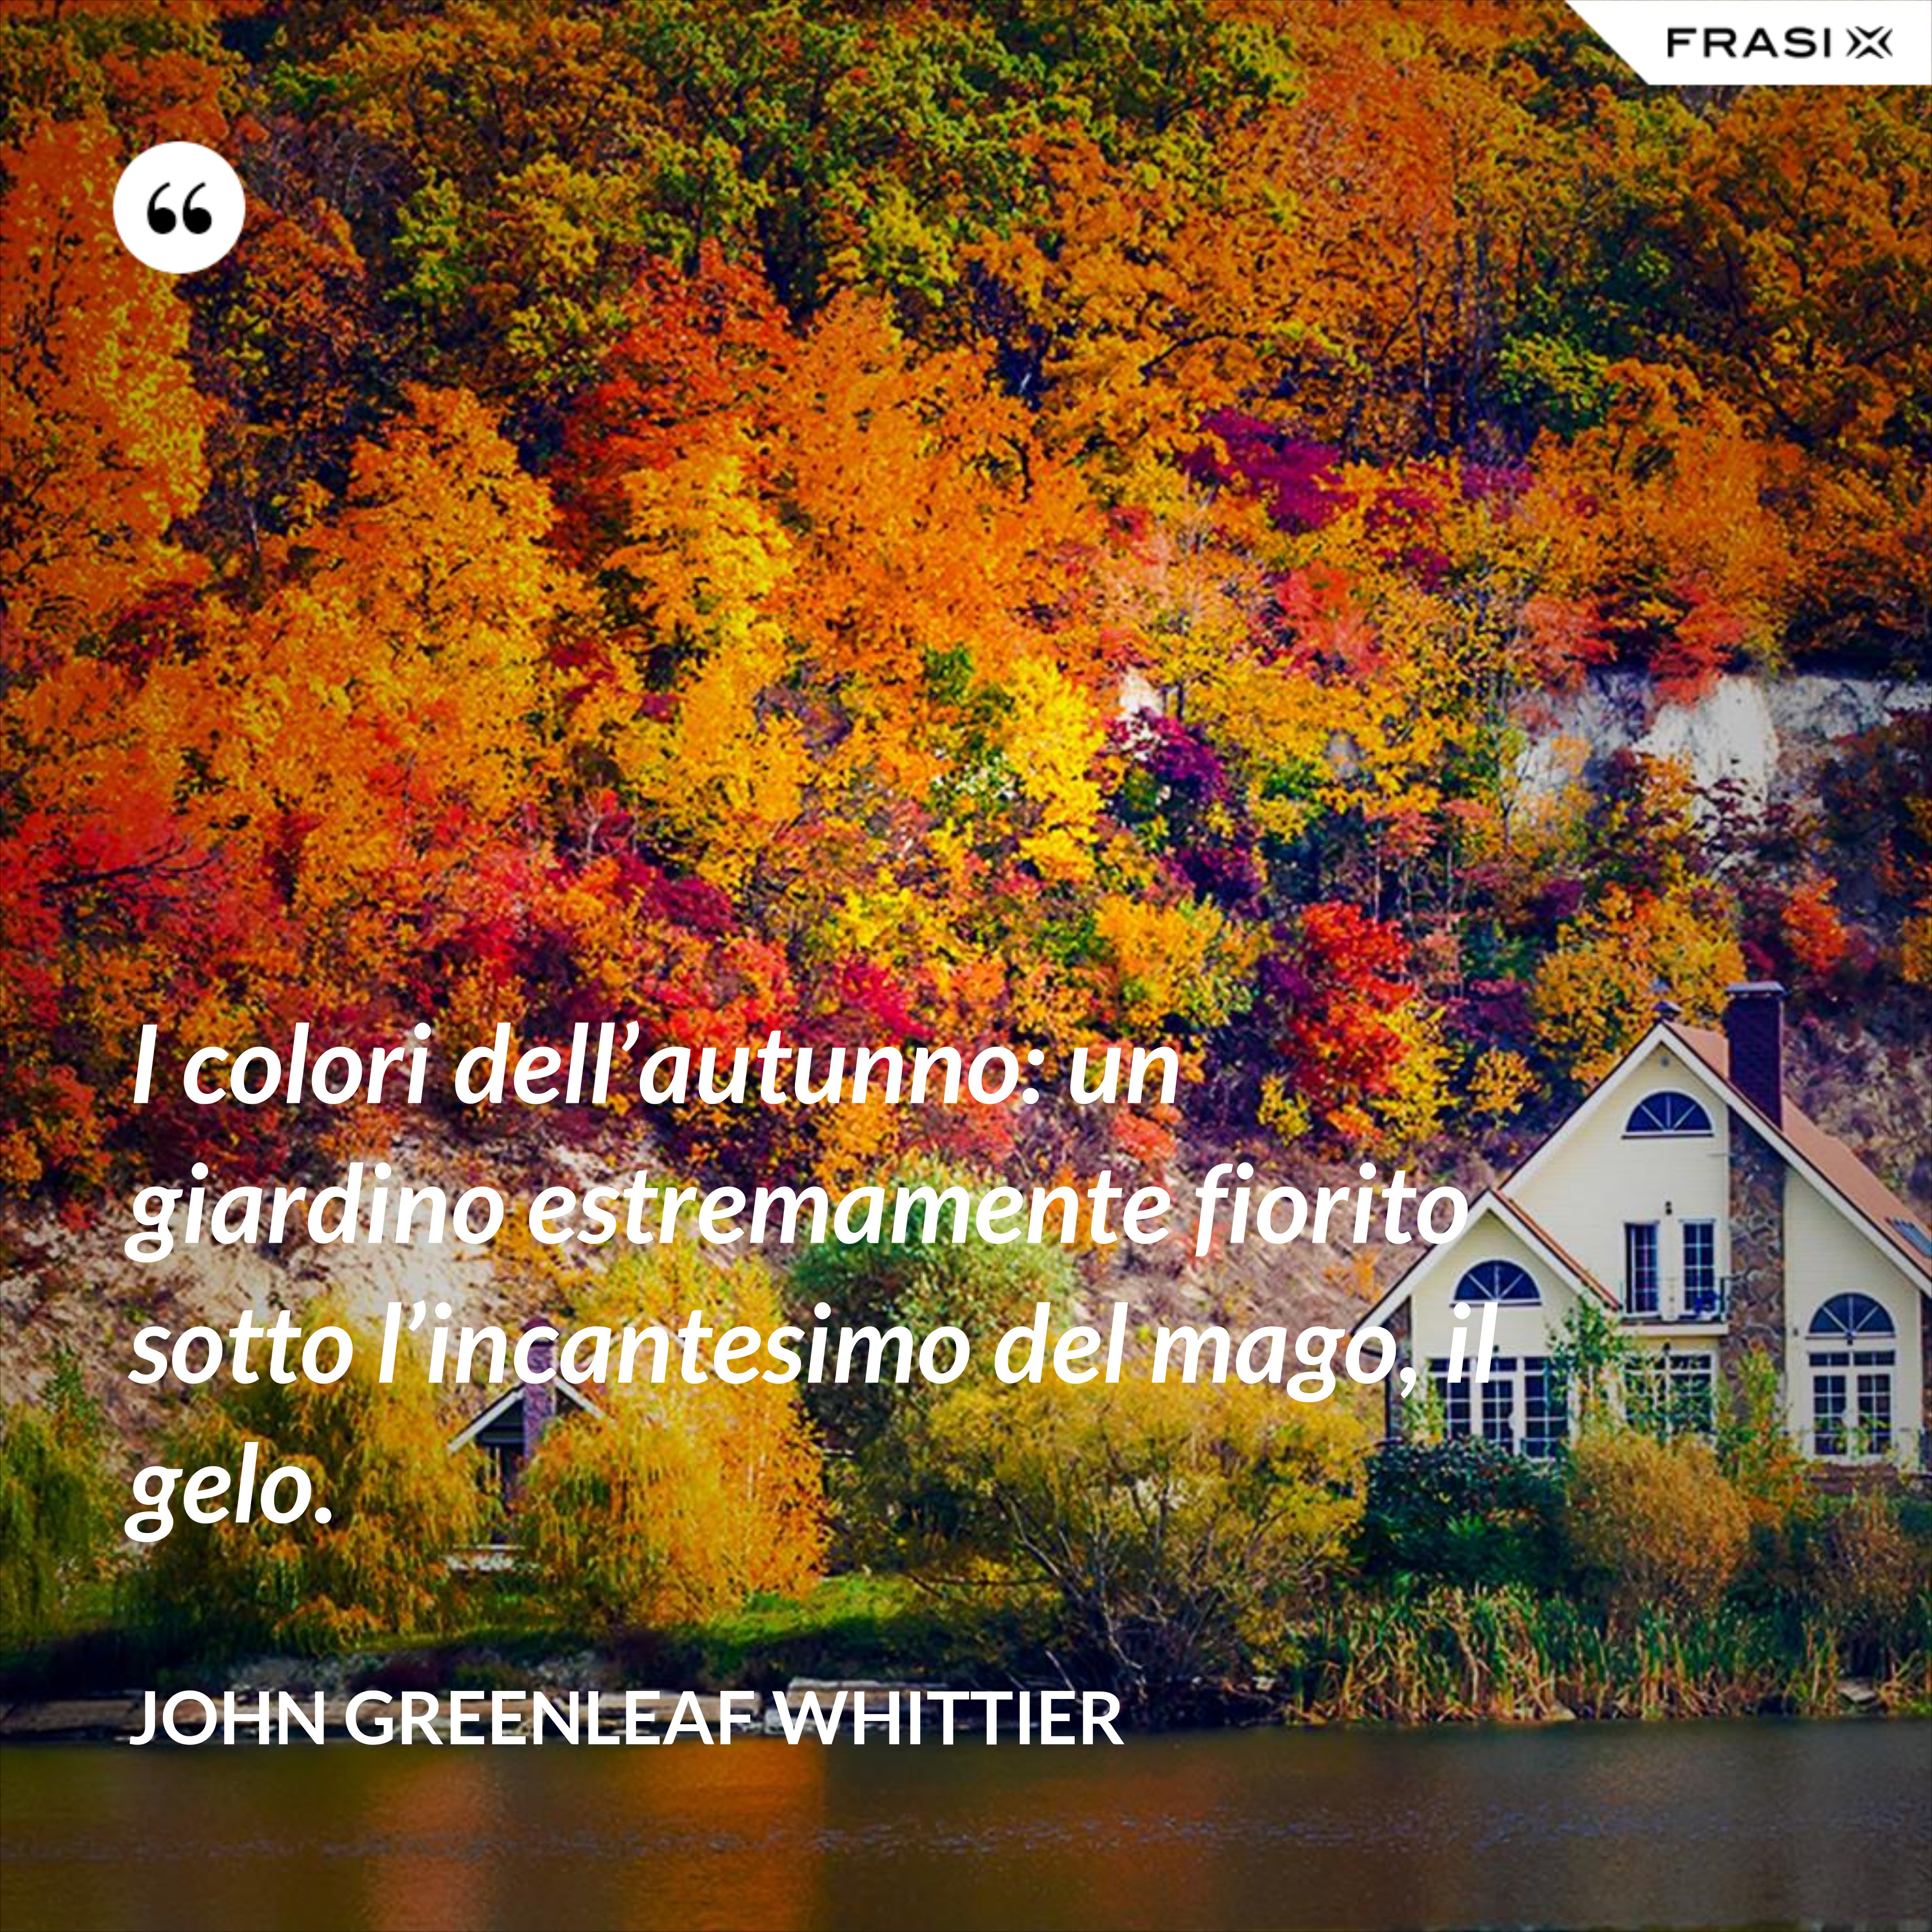 I colori dell’autunno: un giardino estremamente fiorito sotto l’incantesimo del mago, il gelo. - John Greenleaf Whittier